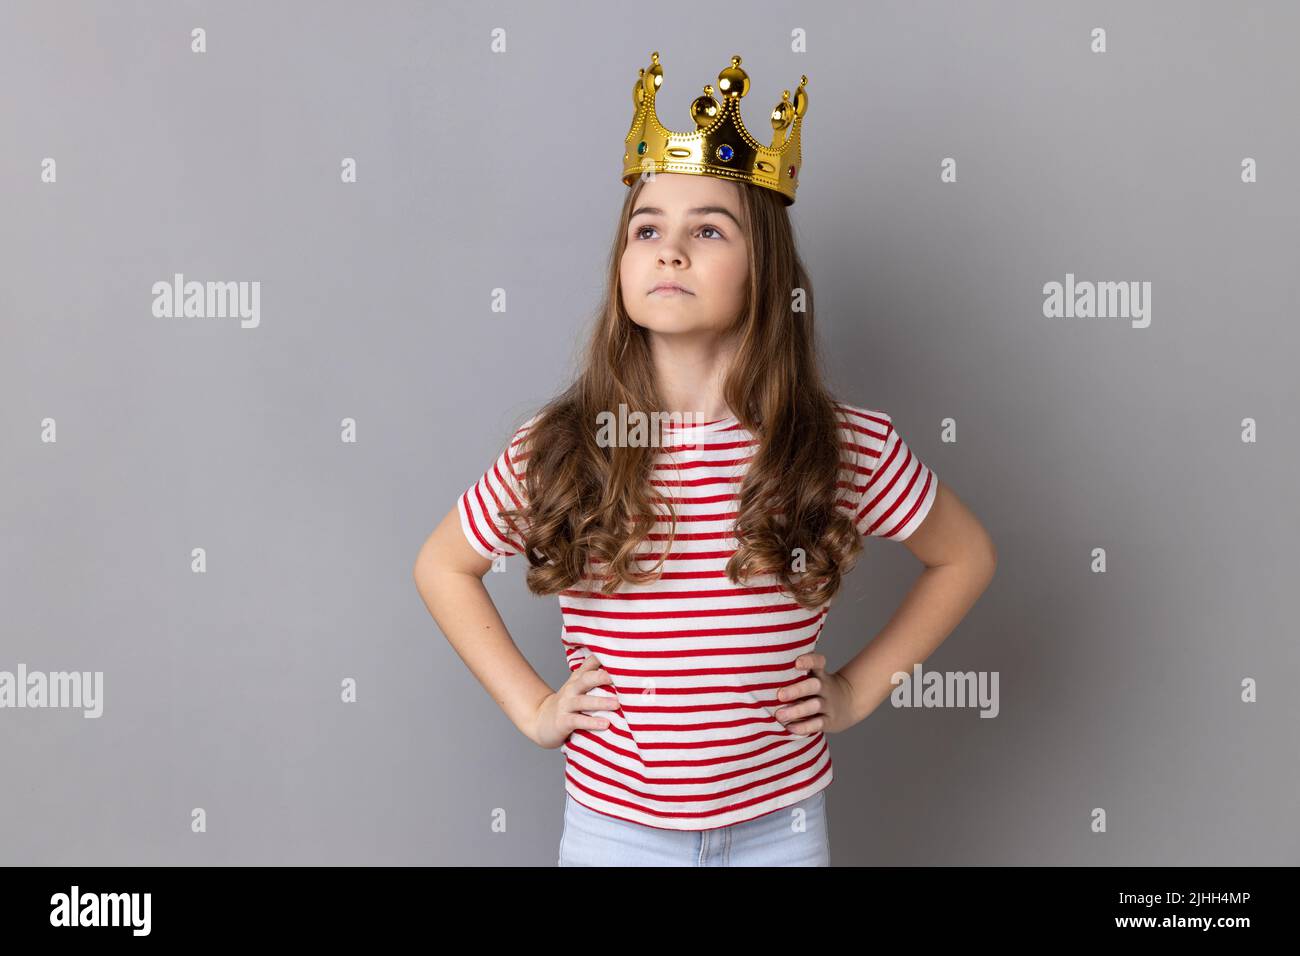 Portrait von selbstbewussten kleinen Mädchen Prinzessin trägt gestreiftes T-Shirt mit den Händen auf den Hüften, Selbstmotivation und träumt davon, am besten zu sein. Innenaufnahme des Studios isoliert auf grauem Hintergrund. Stockfoto